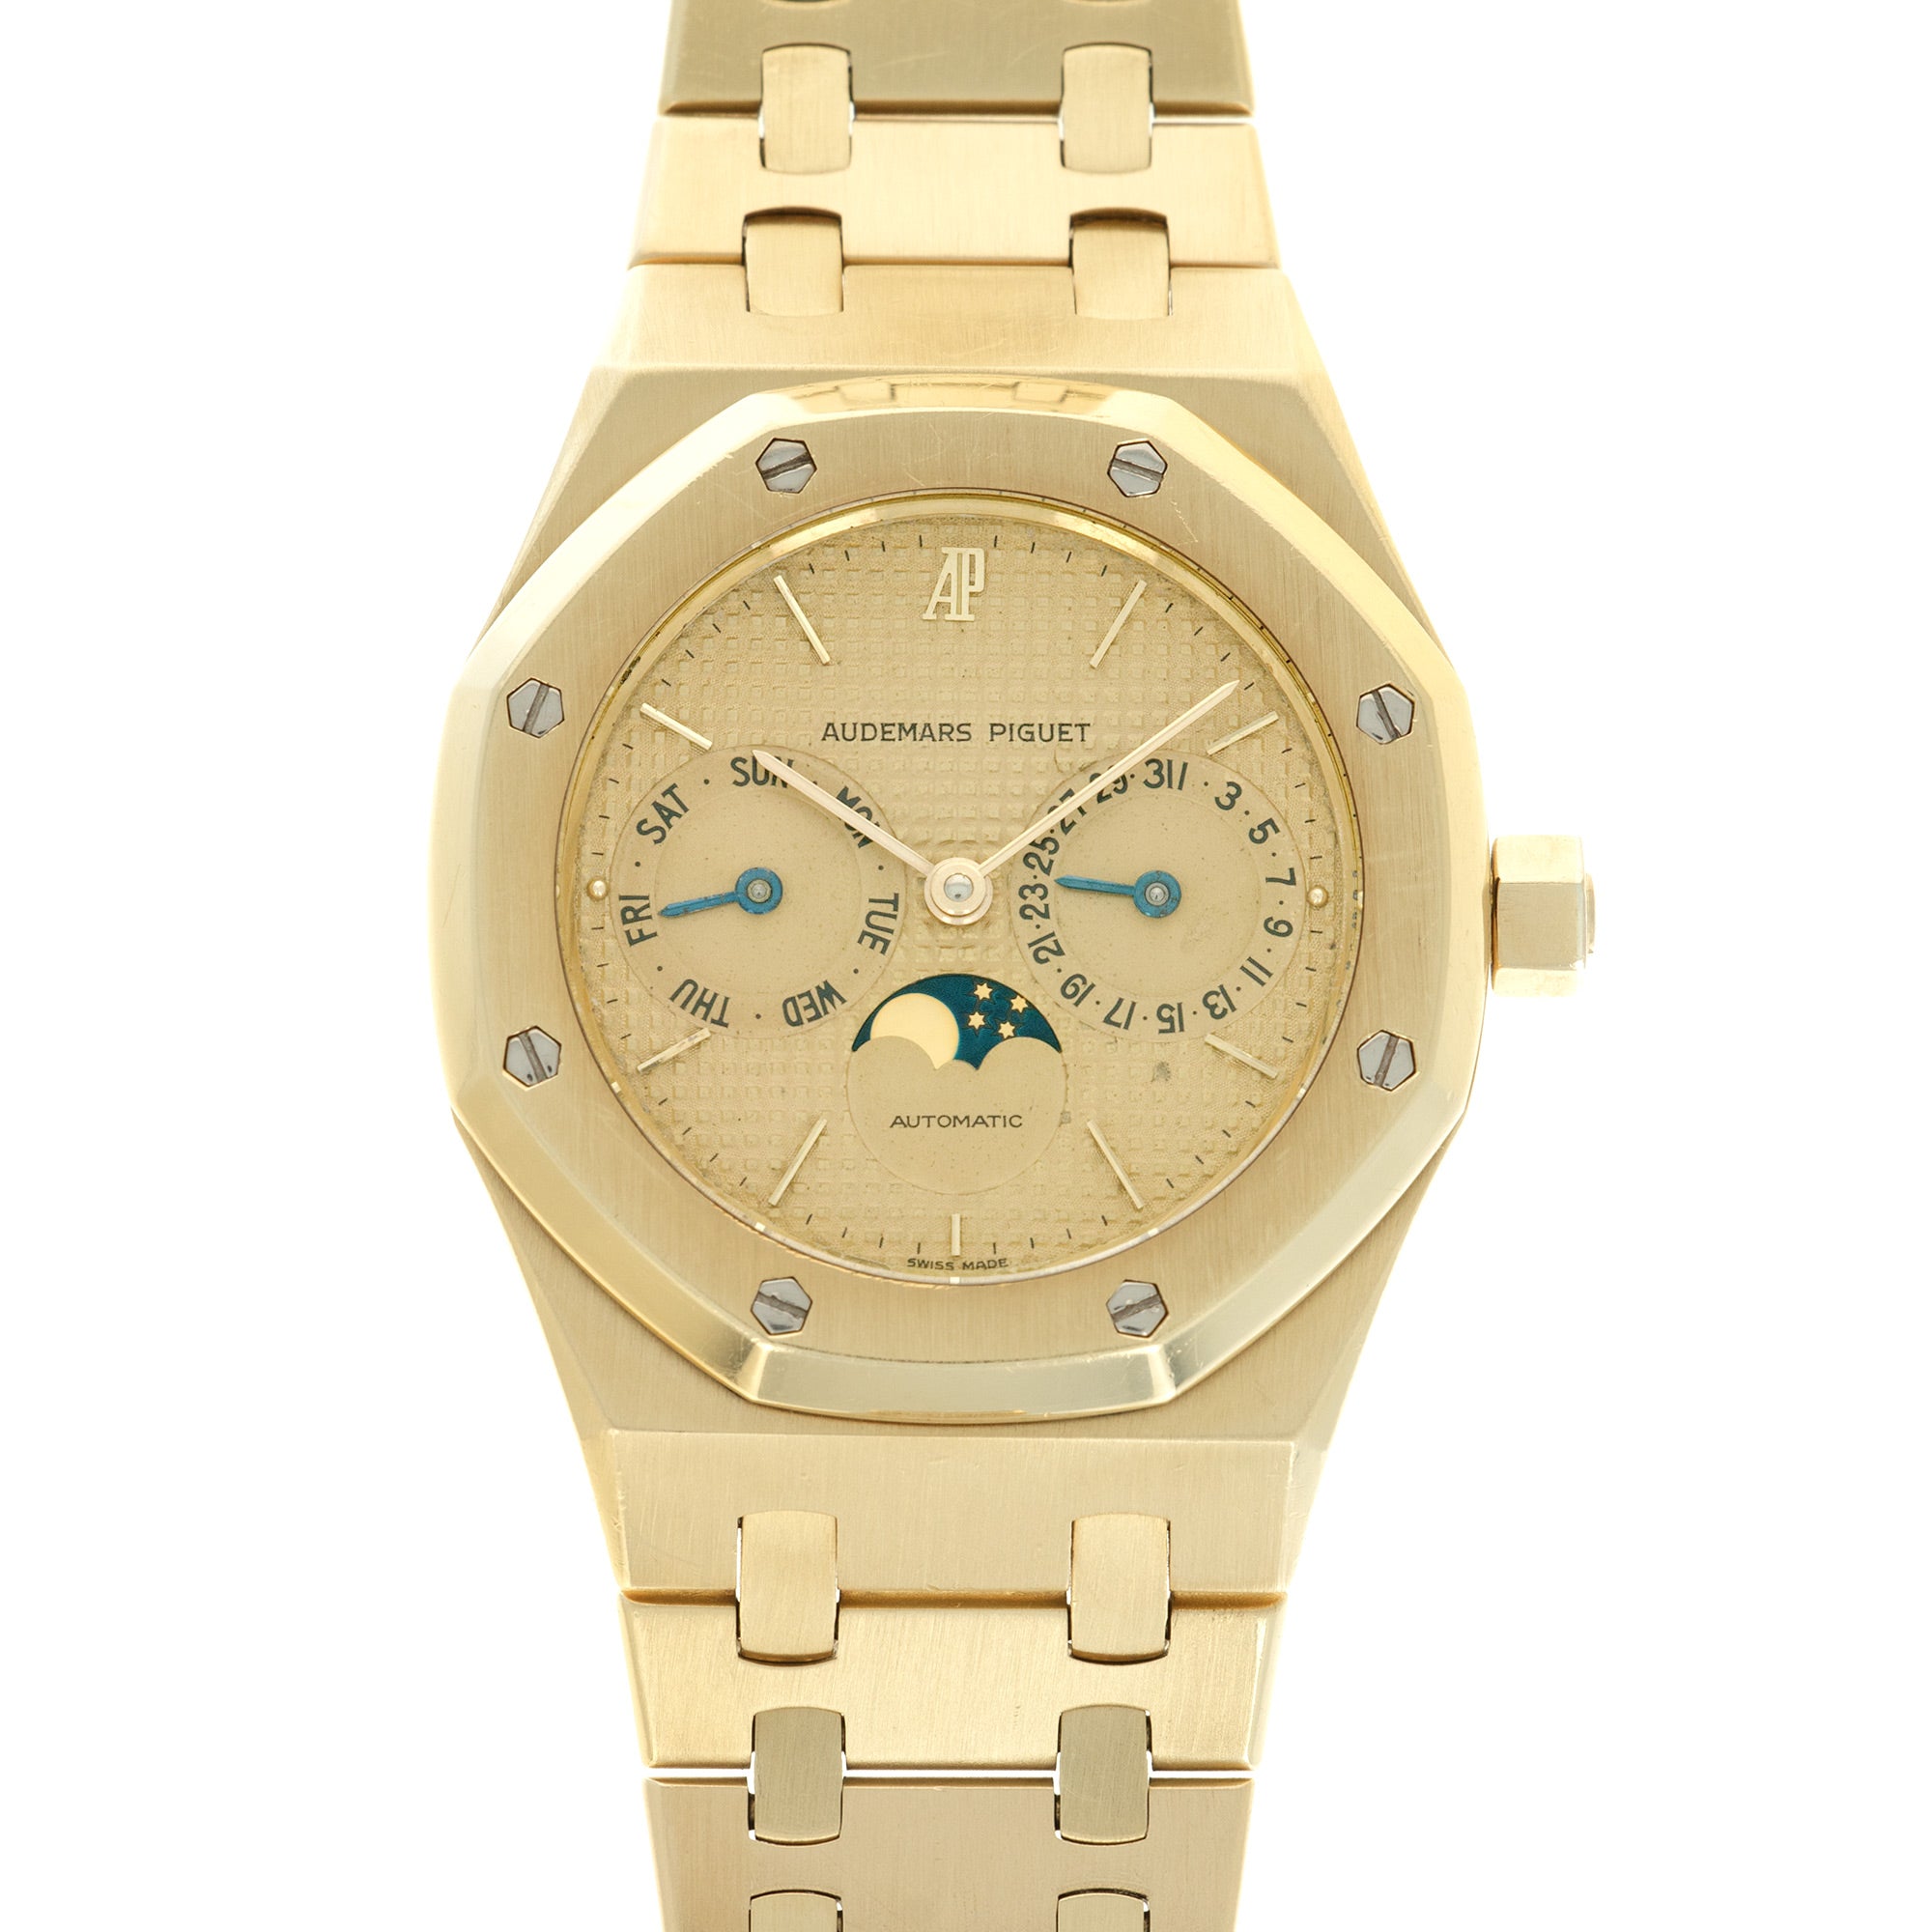 Audemars Piguet - Audemars Piguet Yellow Gold Day-Date Moonphase Royal Oak Watch - The Keystone Watches